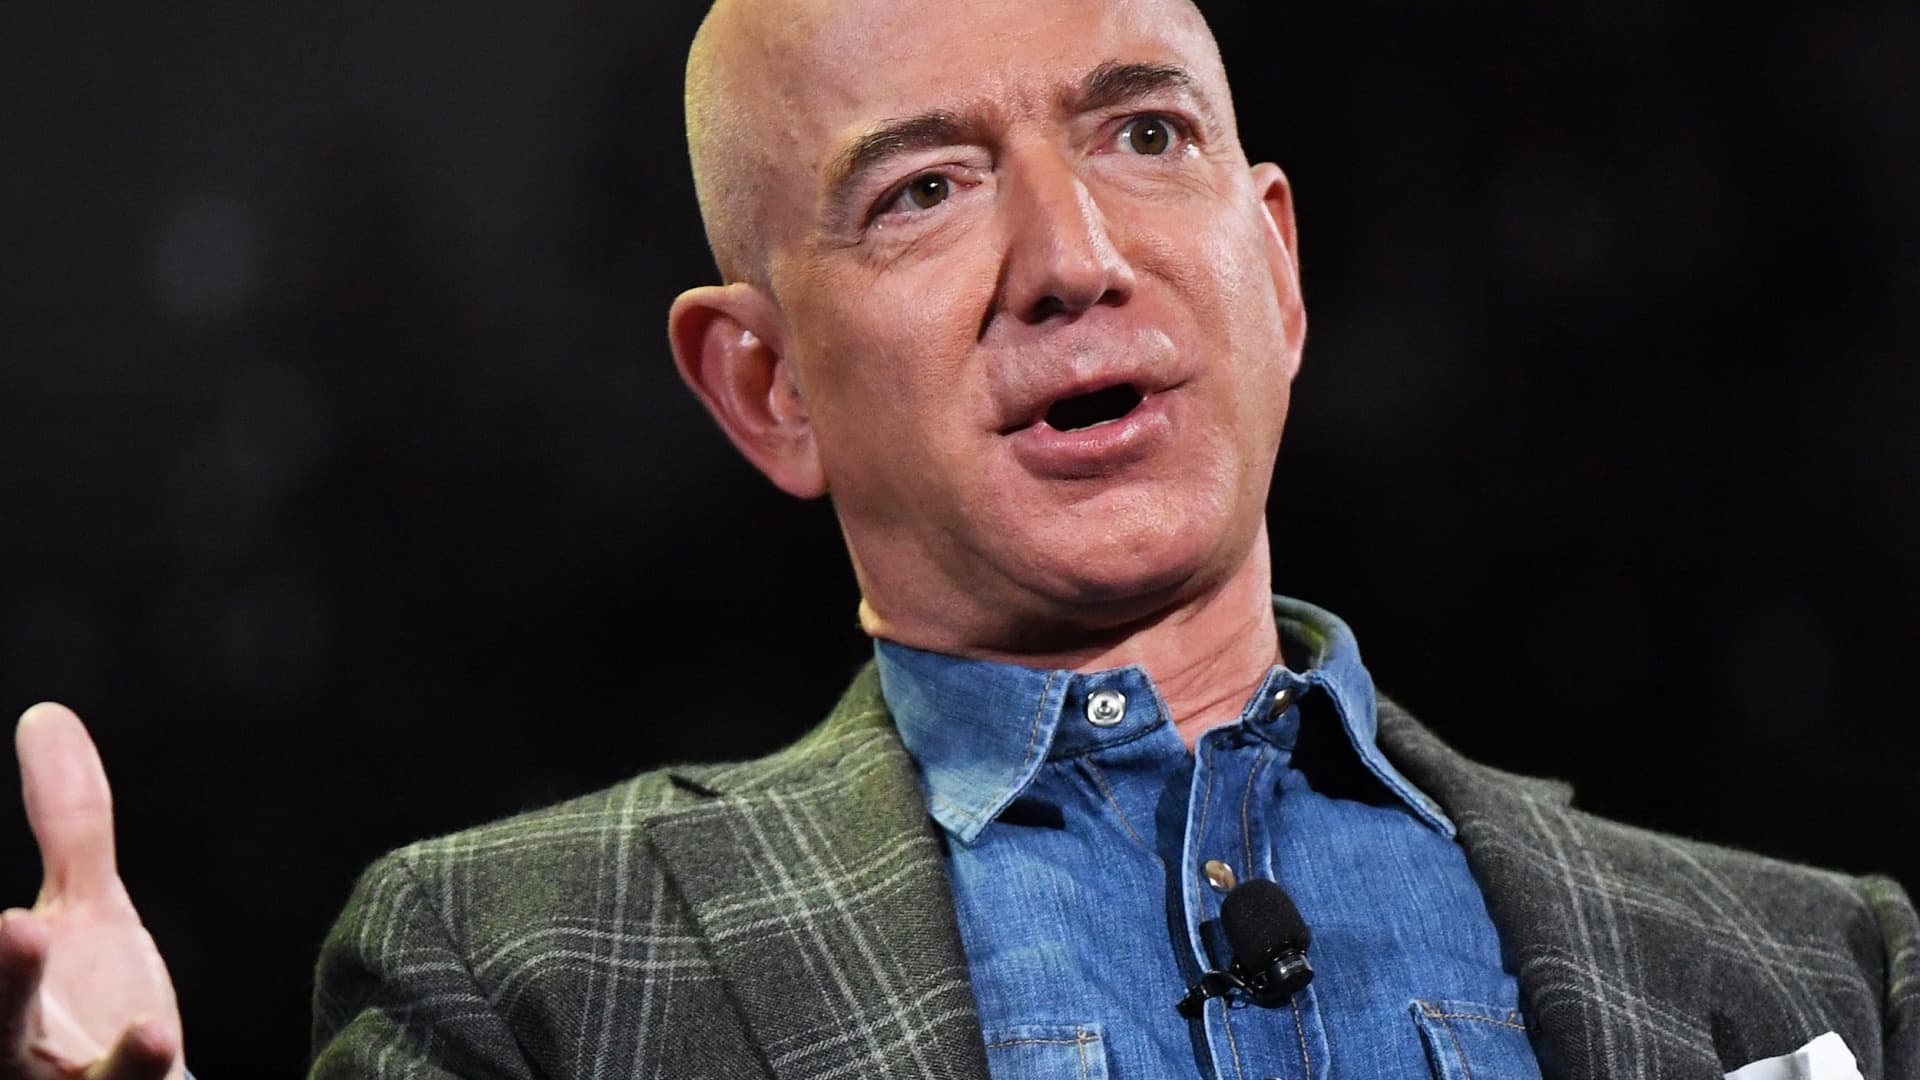 Amazon sets a new tone as Jeff Bezos era comes to an end